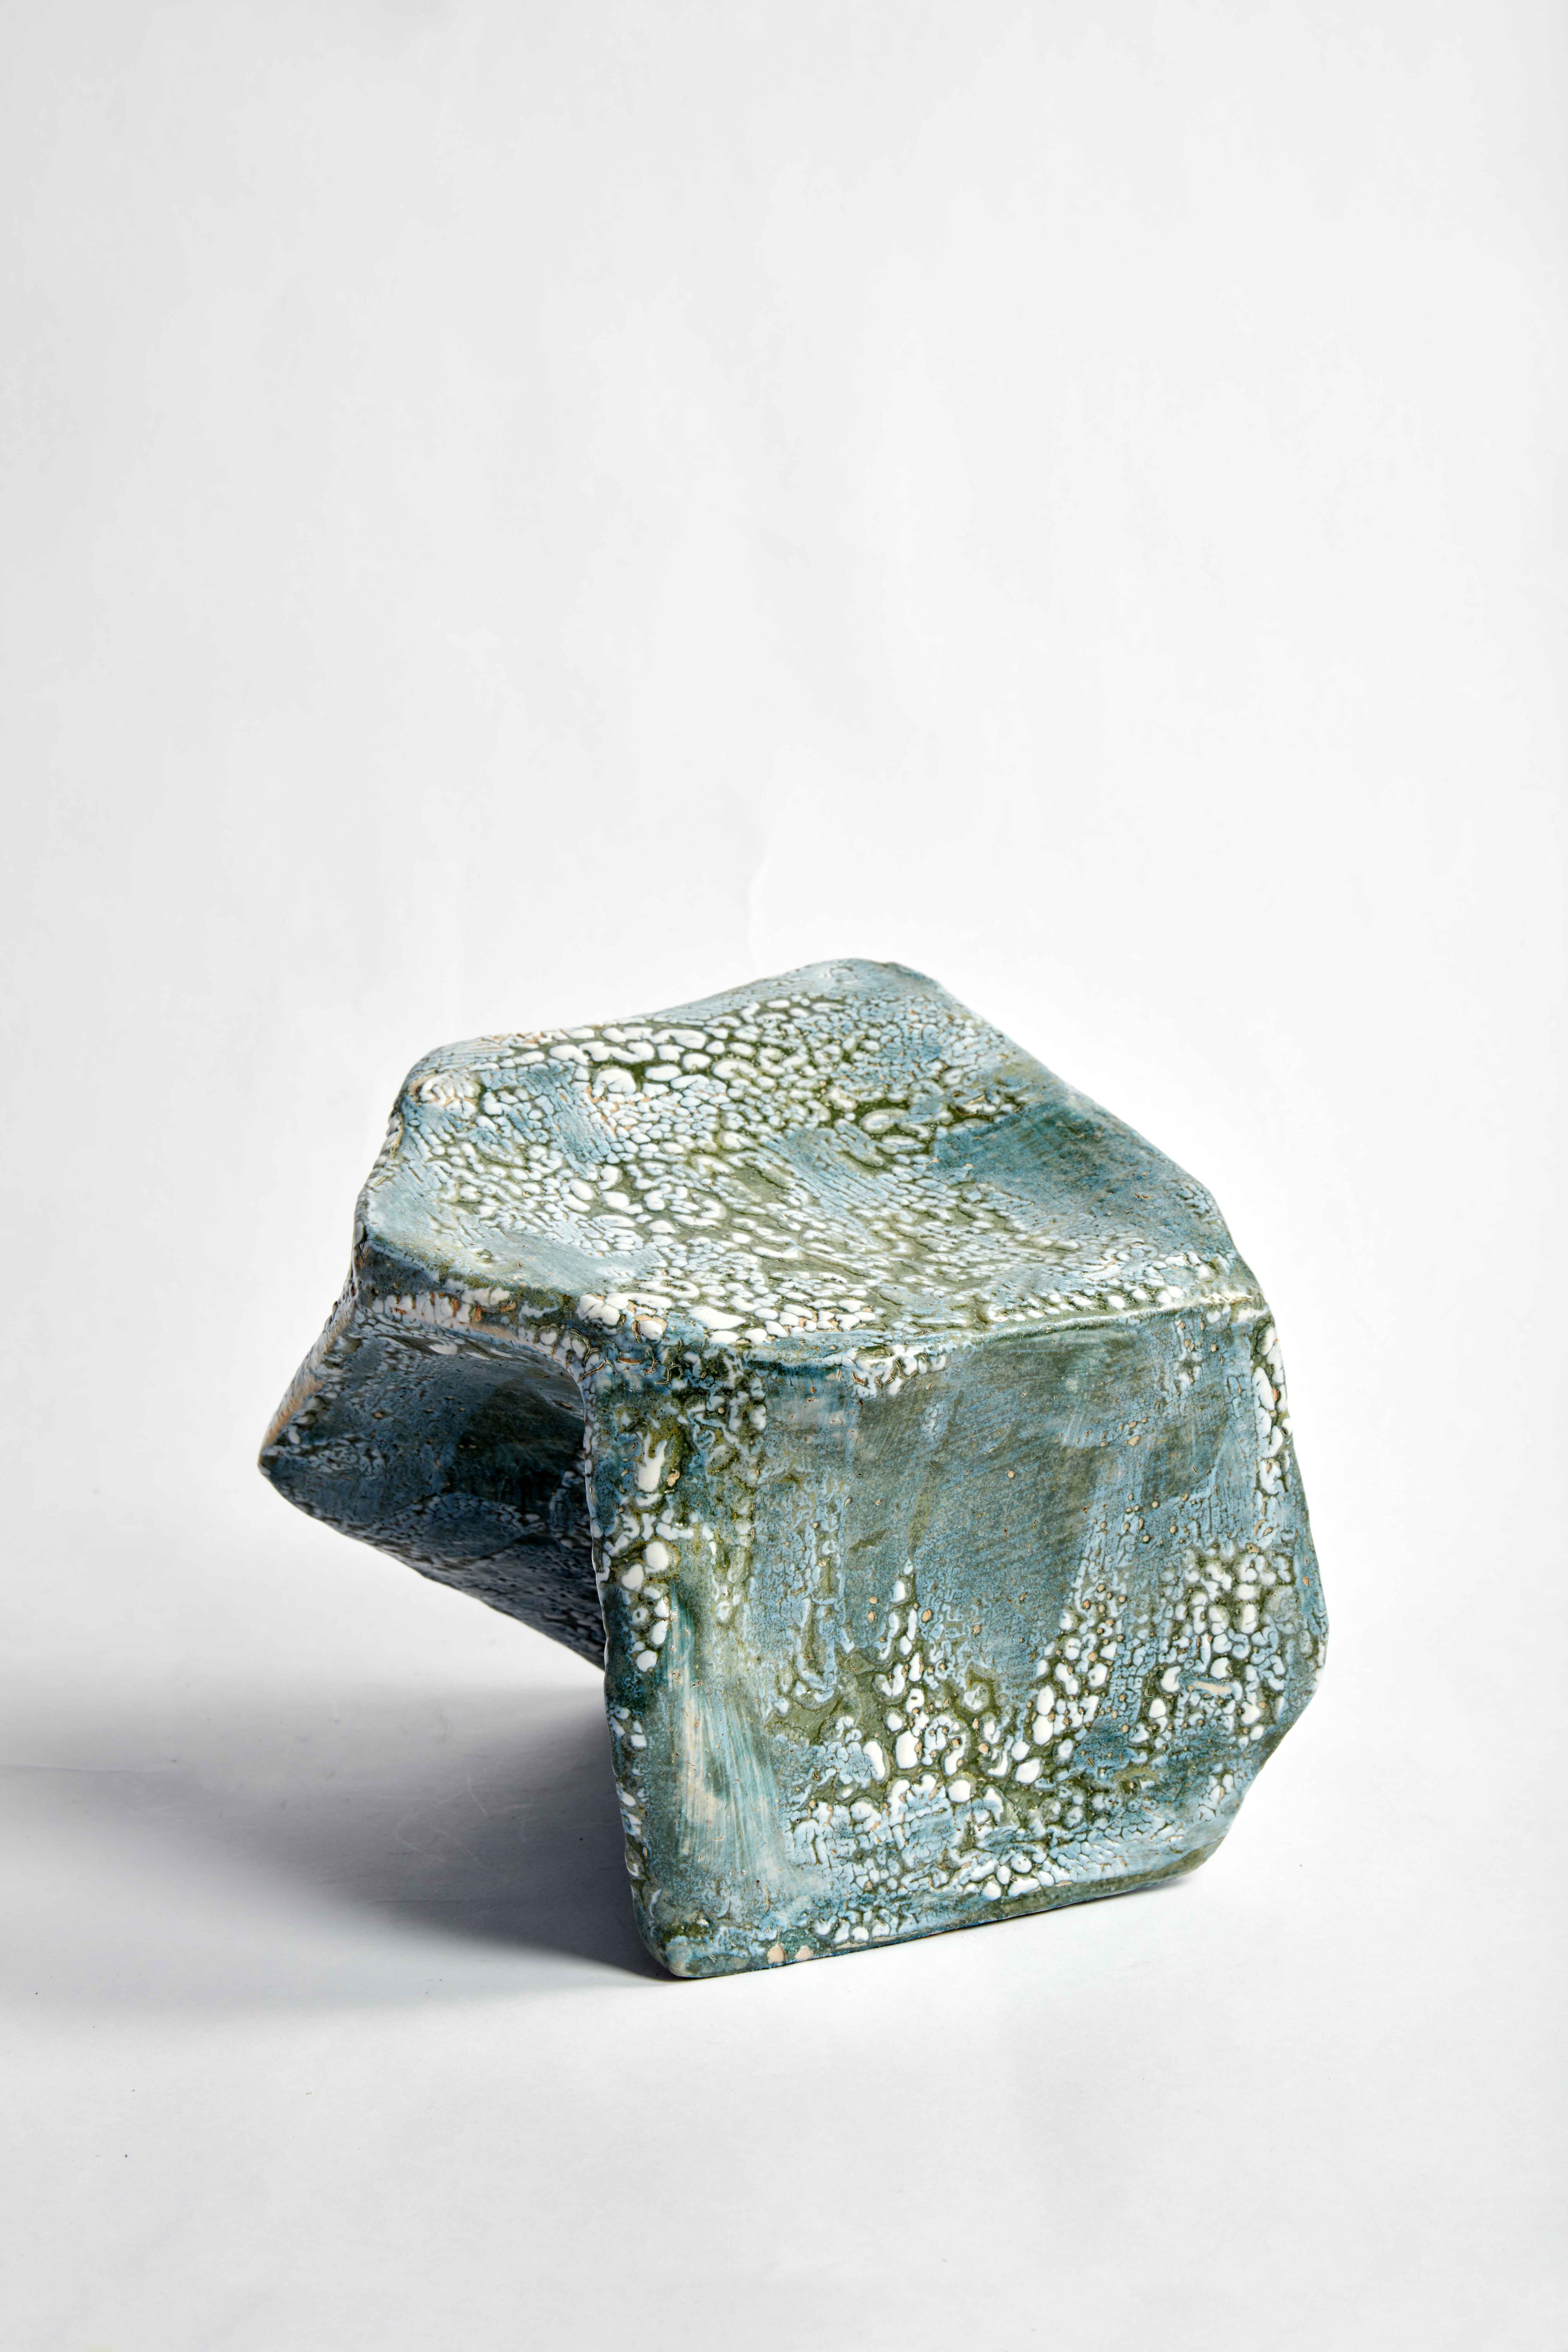 Glazed stoneware, 26 x 23 x 18cm, 2020.
